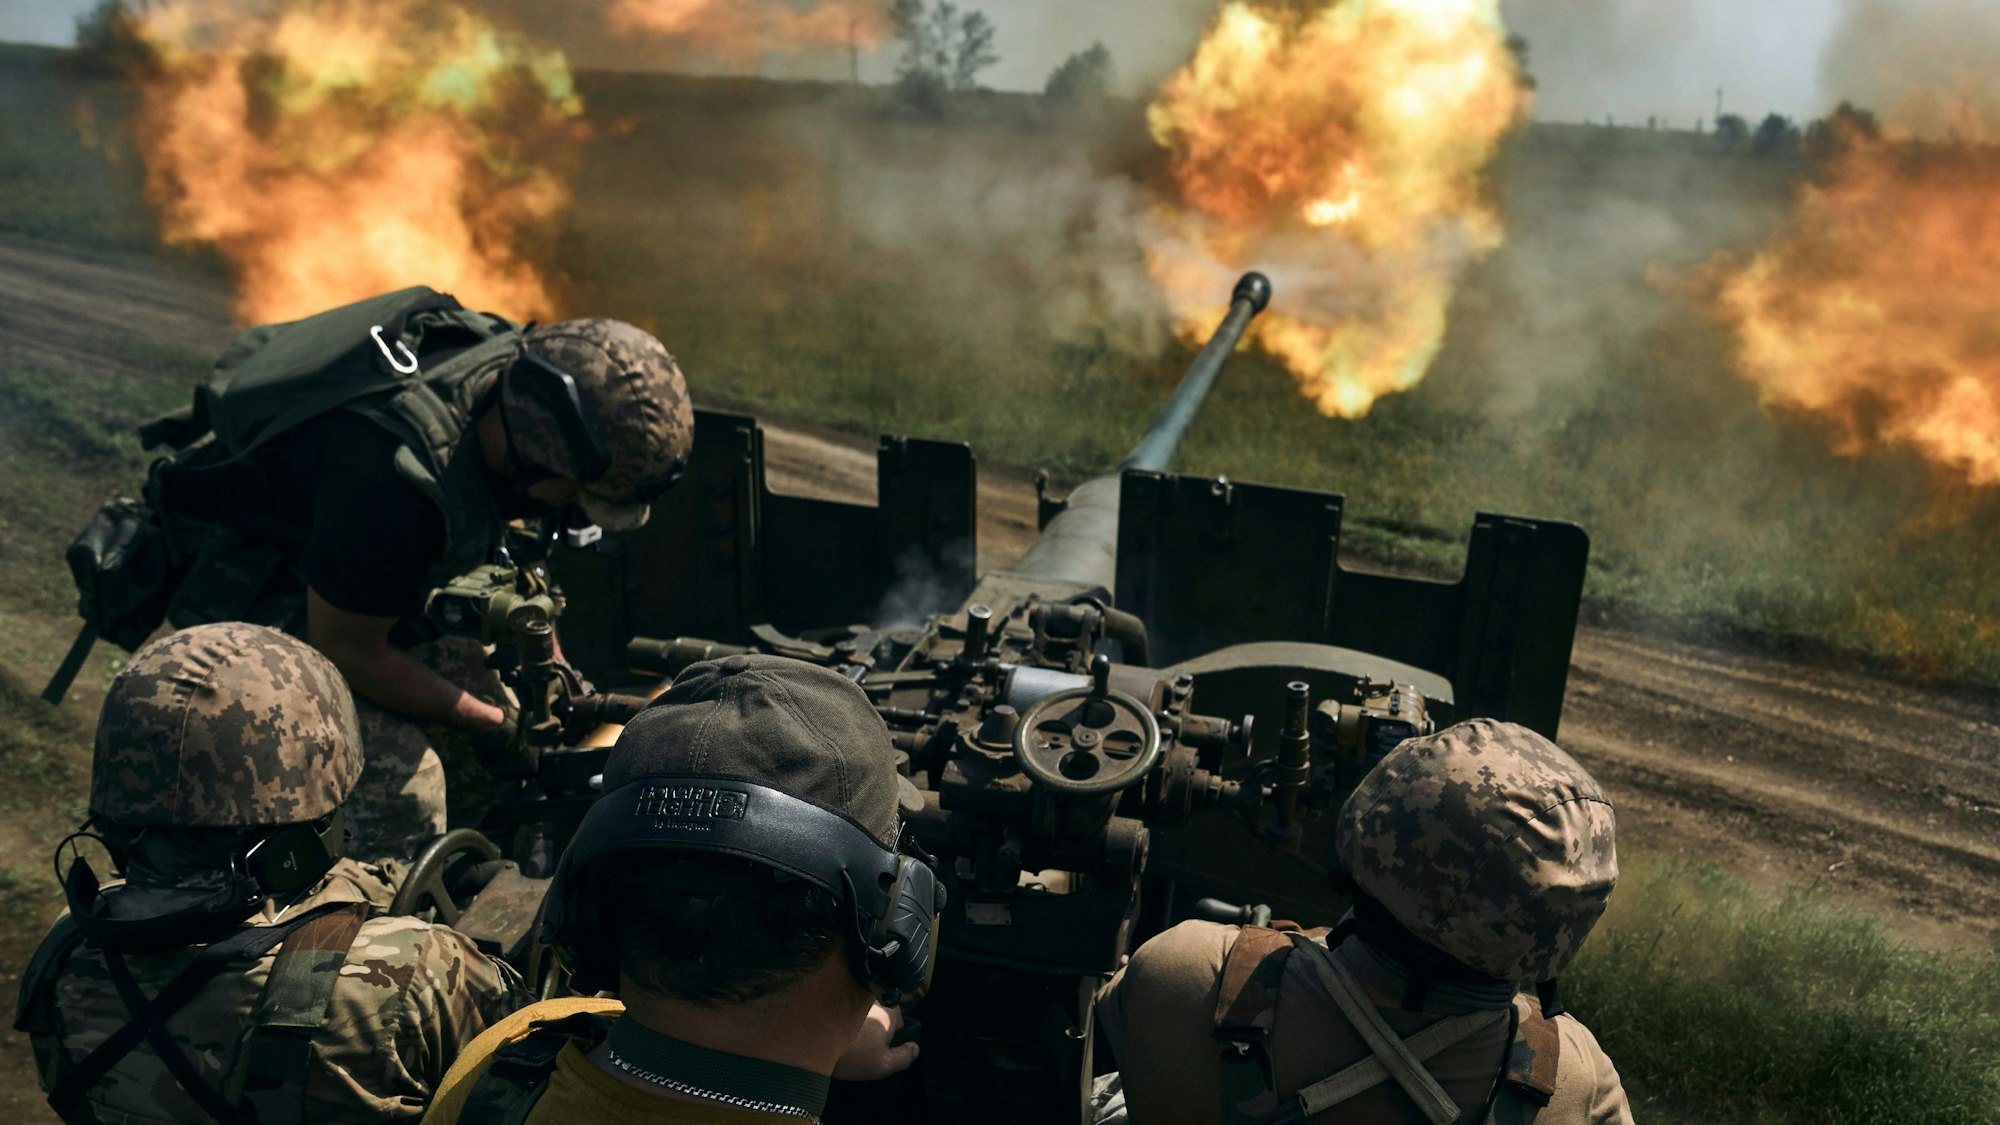 Männer in Tarnuniformen sitzen hinter dem Zielrohr einer Kanone, aus deren Mündung Feuer kommt.